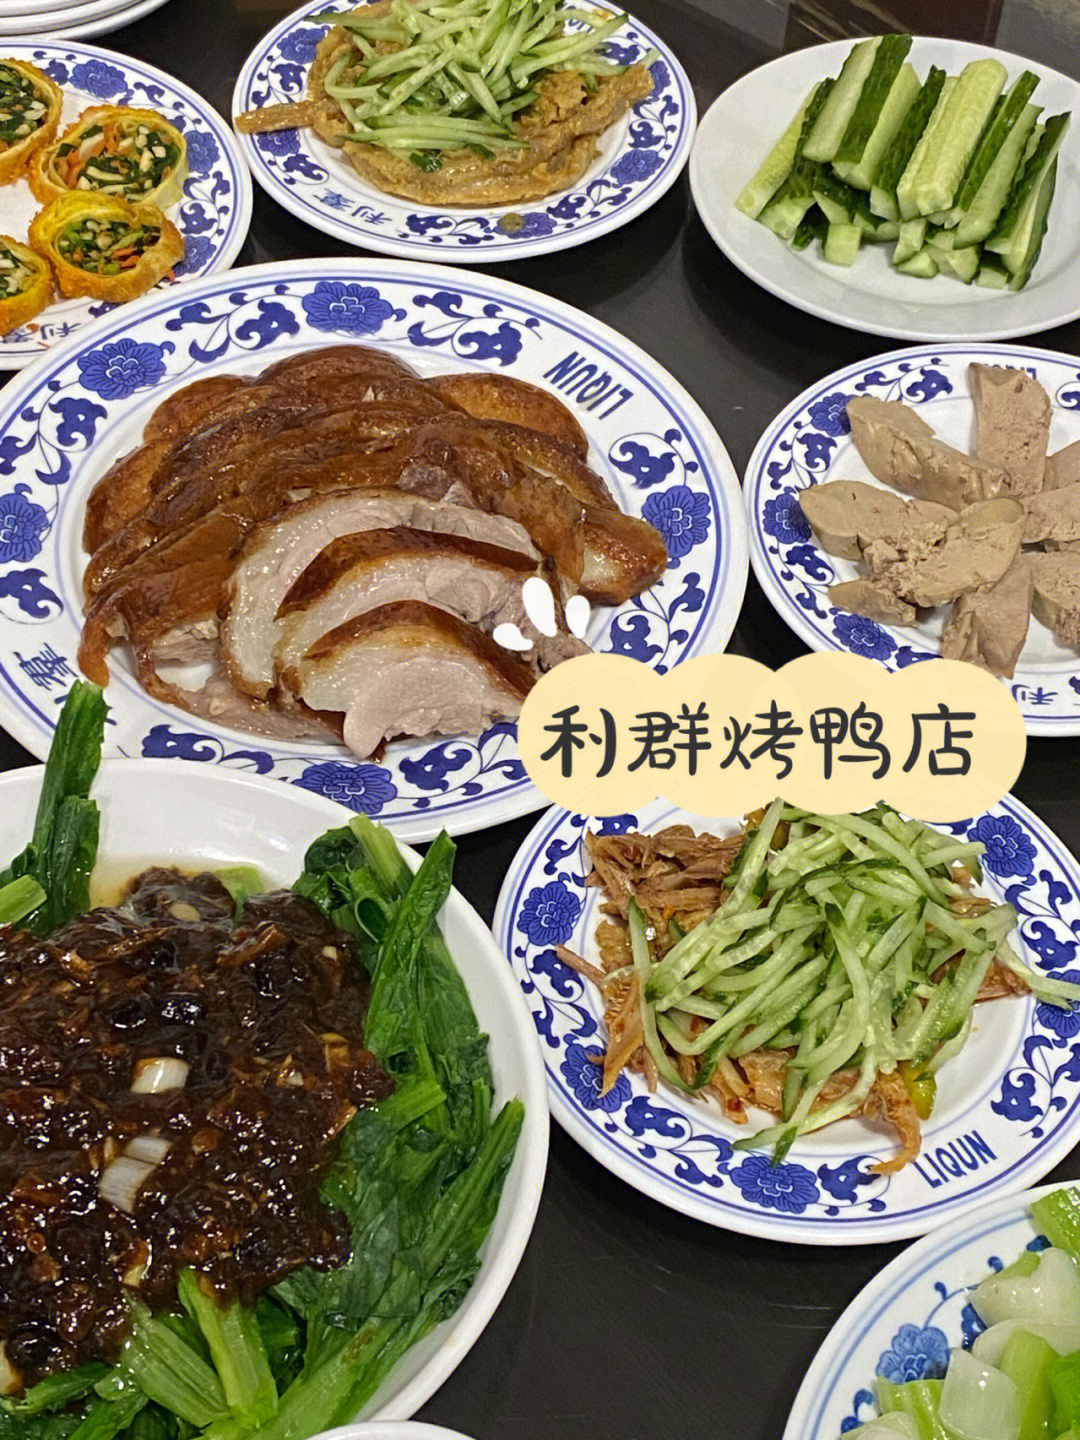 传说中的北京神秘烤鸭